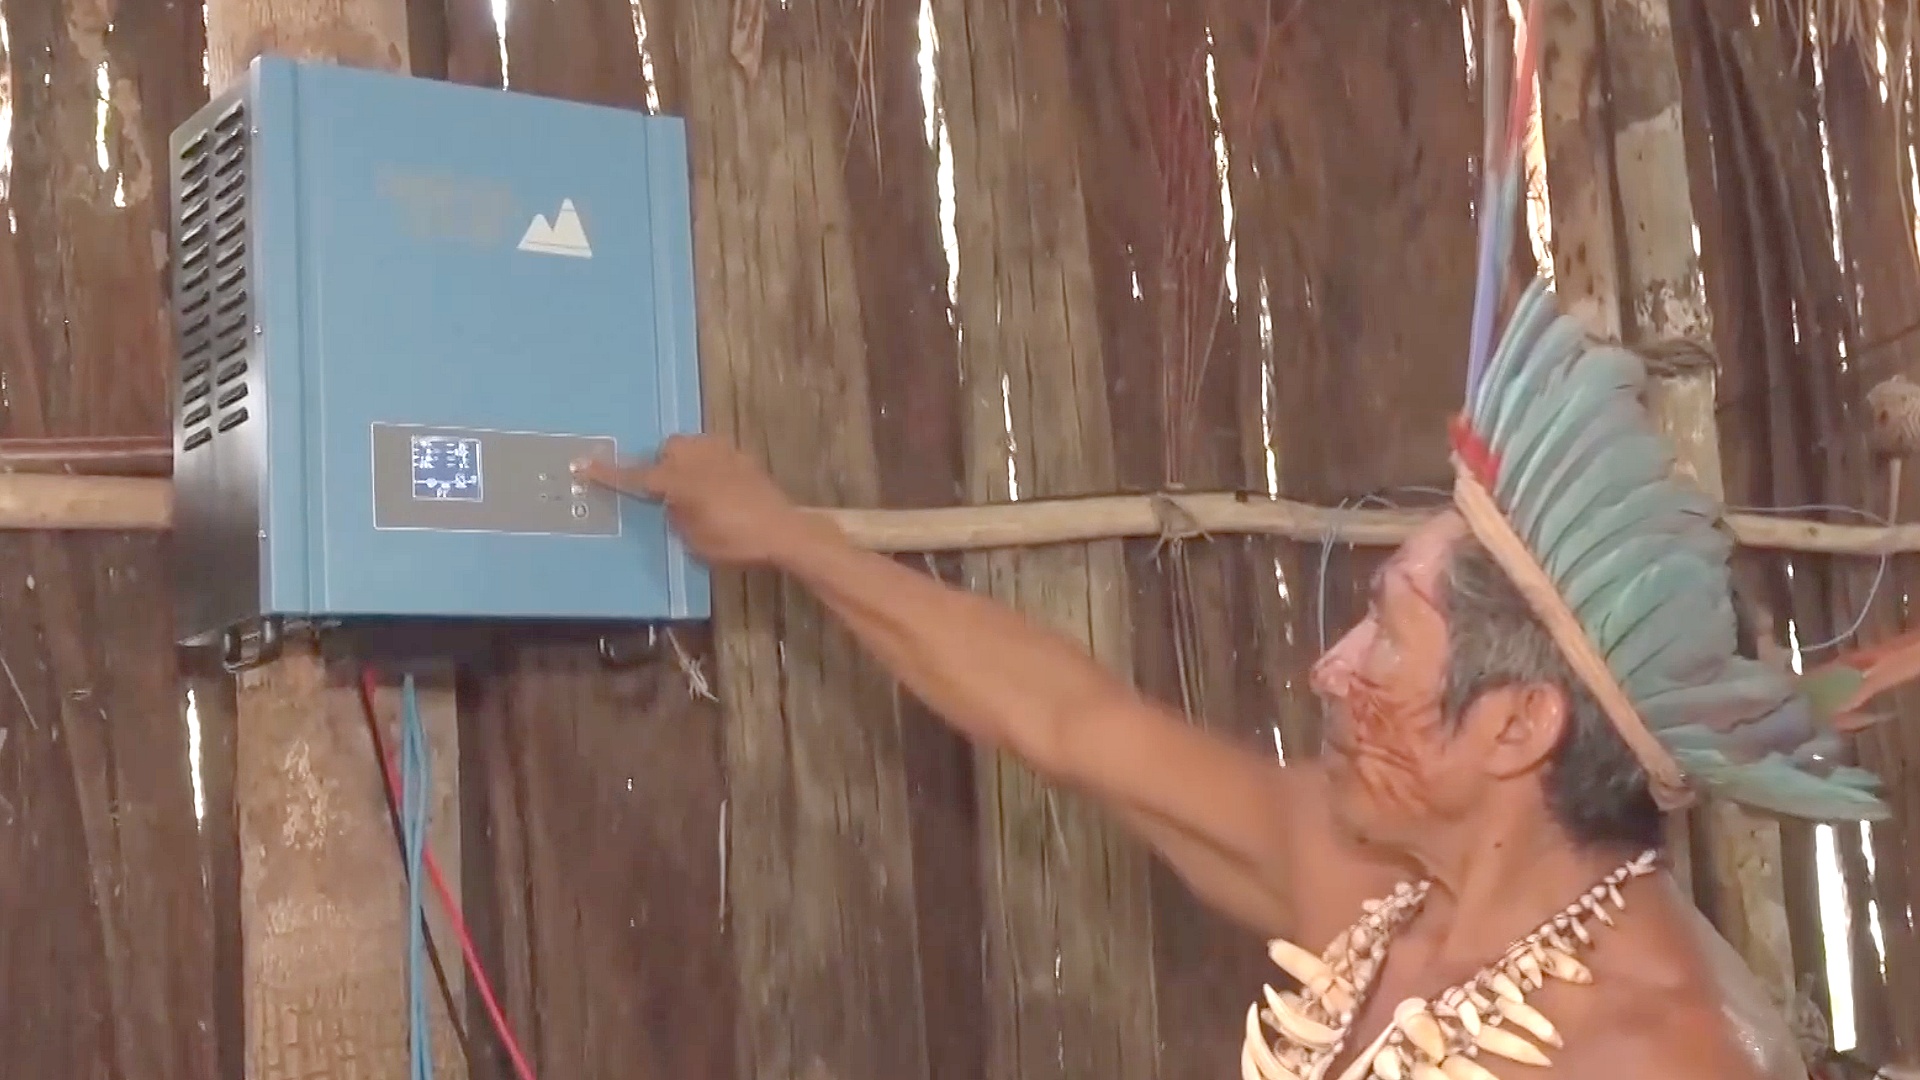 В Бразилии в деревнях аборигенов устанавливают солнечные панели